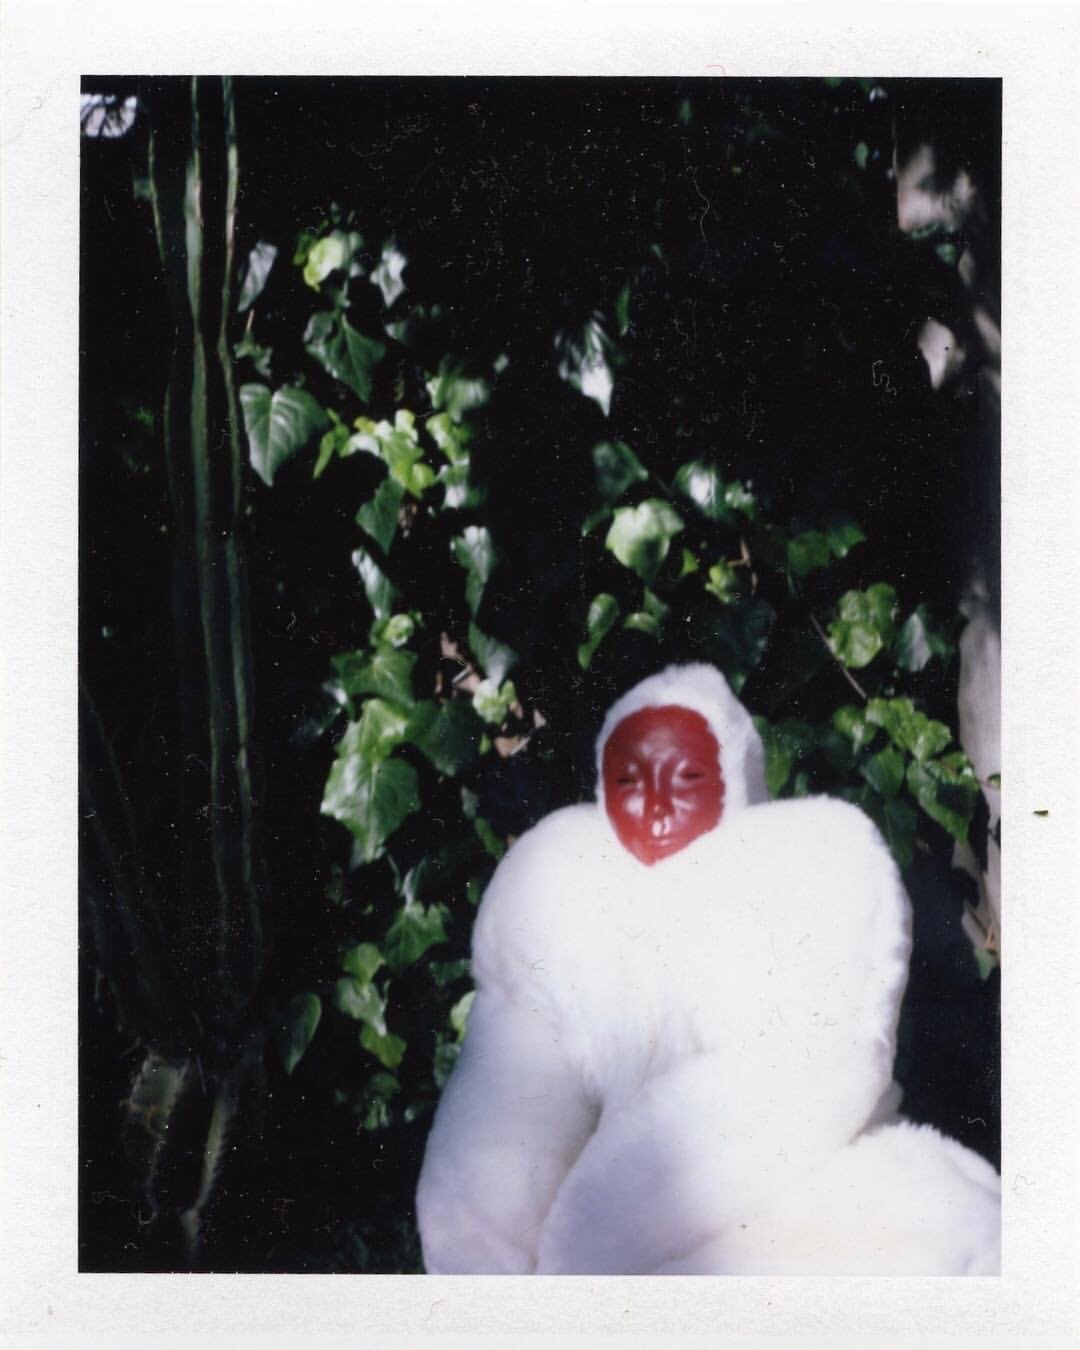  Ceramic mask, aerosol paint, faux fur body suit. Polaroid Photo: Dalton Townsend. Concept, Costume Design and Seamstress: Rachel Pozivenec. 2019 